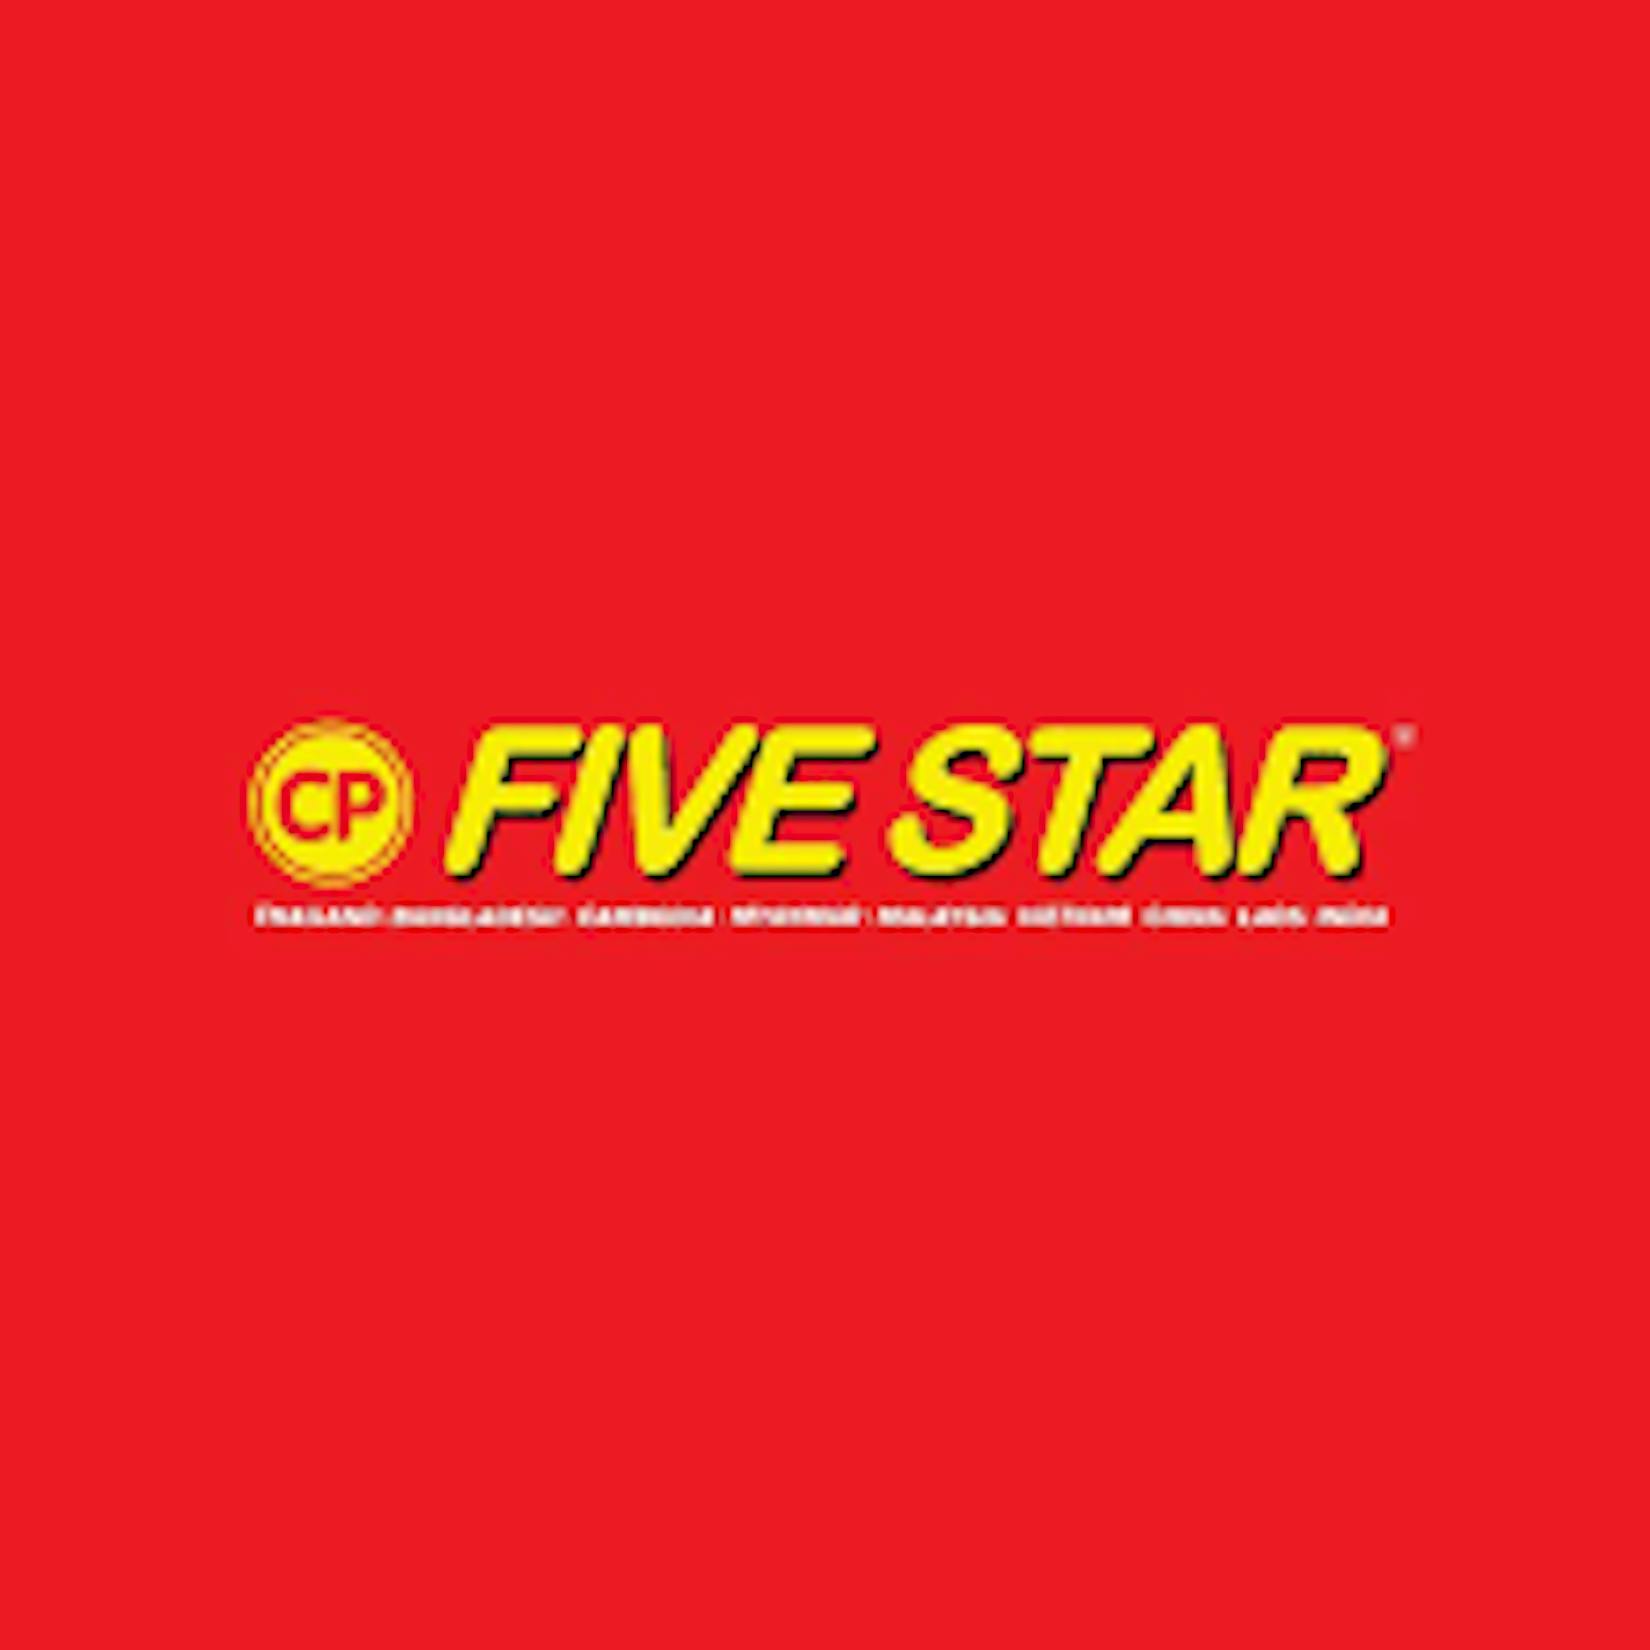 CP Five Star Chicken | yathar